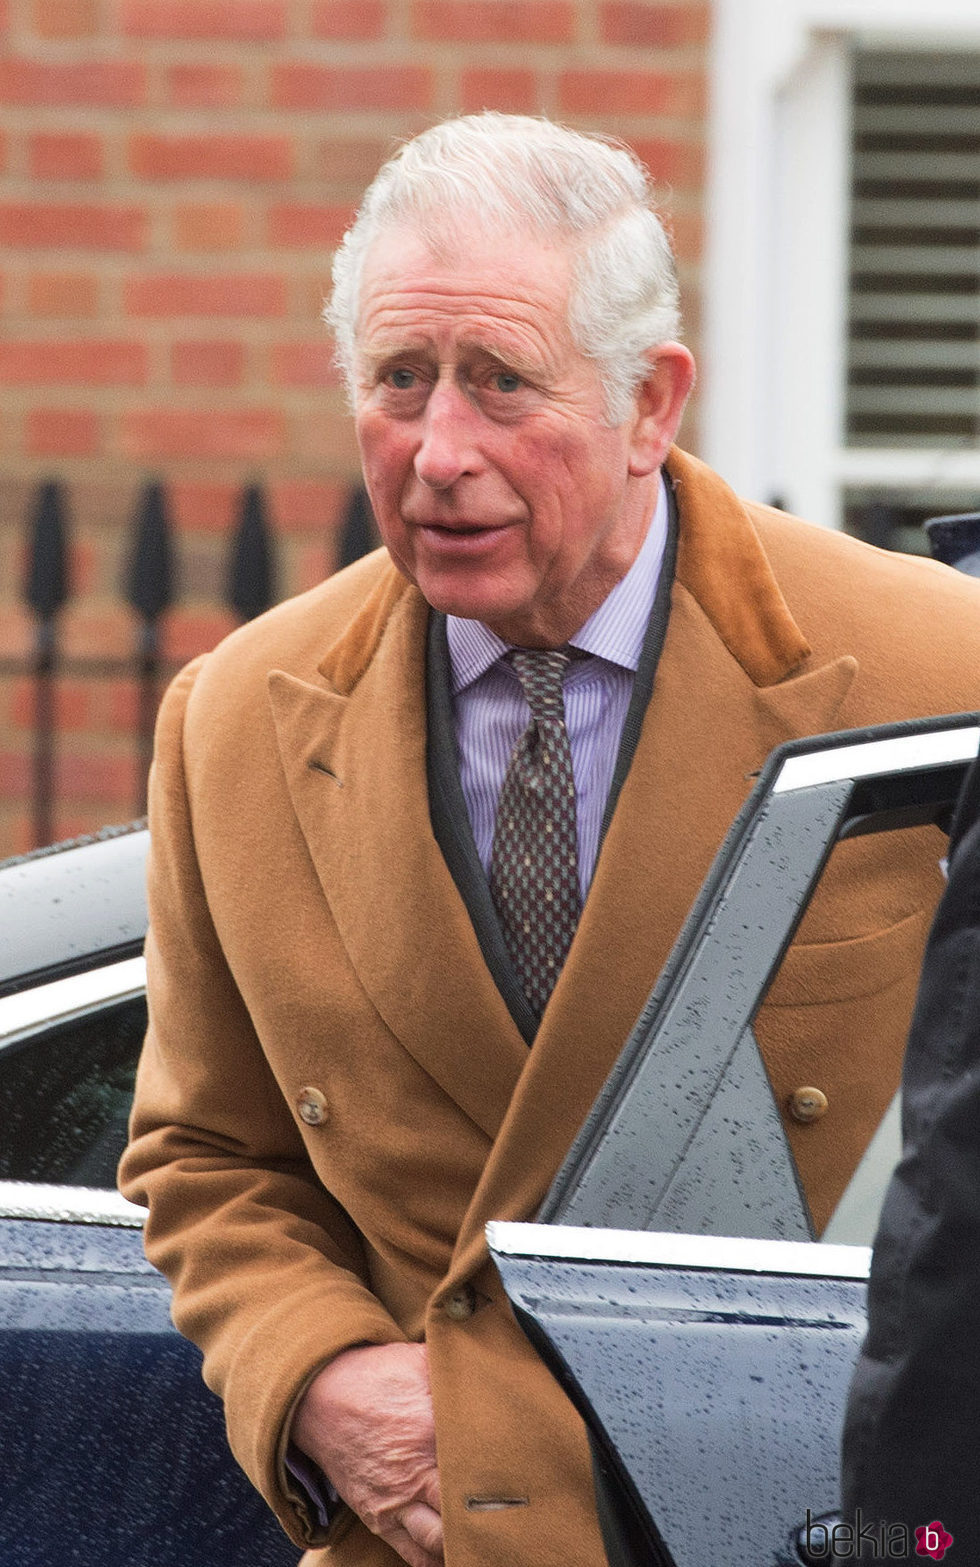 El Príncipe Carlos de Inglaterra acude a un acto público